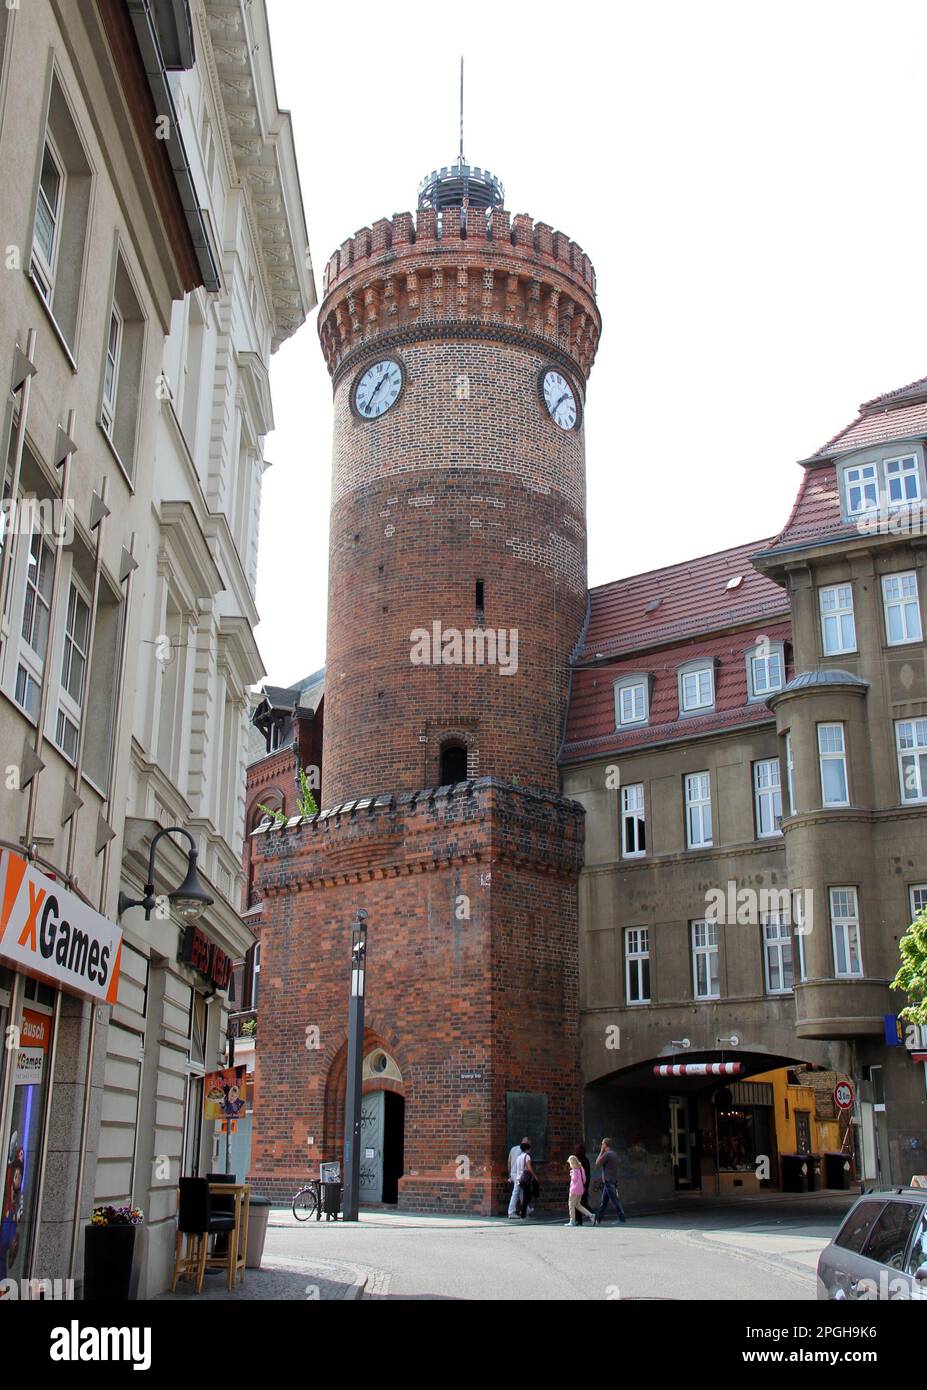 La tour de Spremberger, symbole de la ville, datant du 13th siècle, a formé la porte sud de la ville avec le bastion et le portier, Cottbus, Brandebourg, Allemagne Banque D'Images